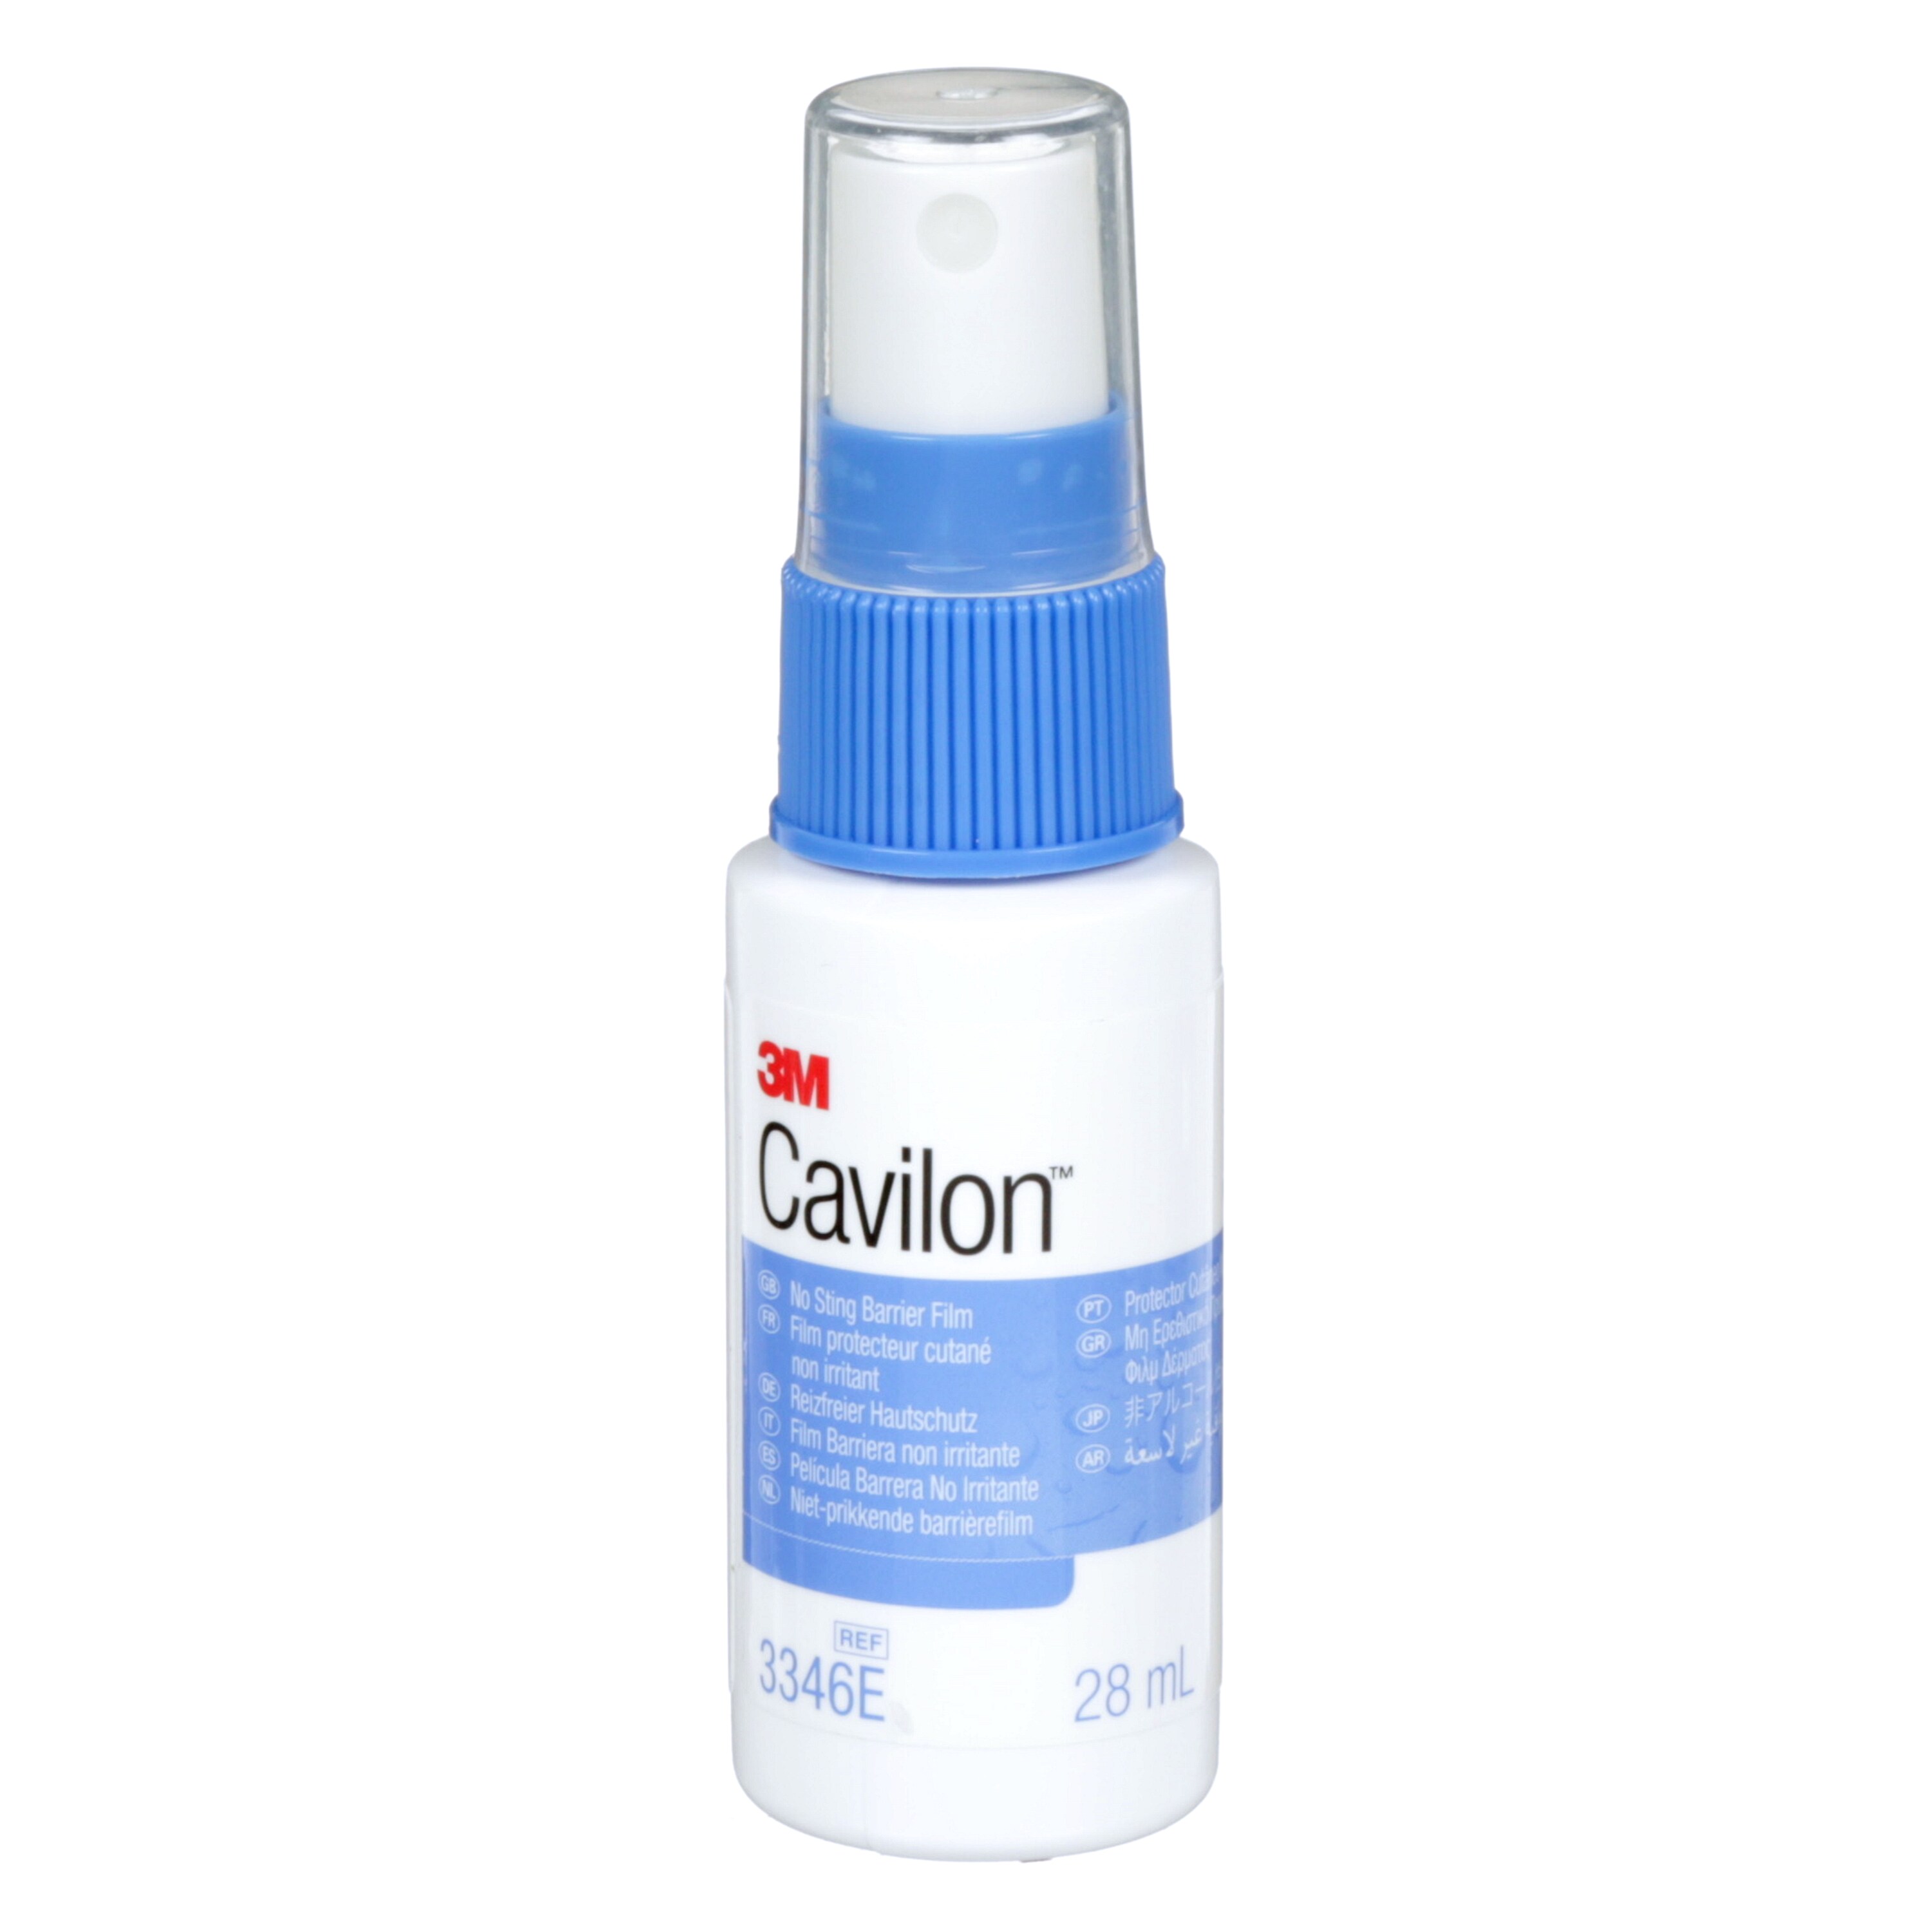 Cavilon™ spray - 28 ml - 1 pc